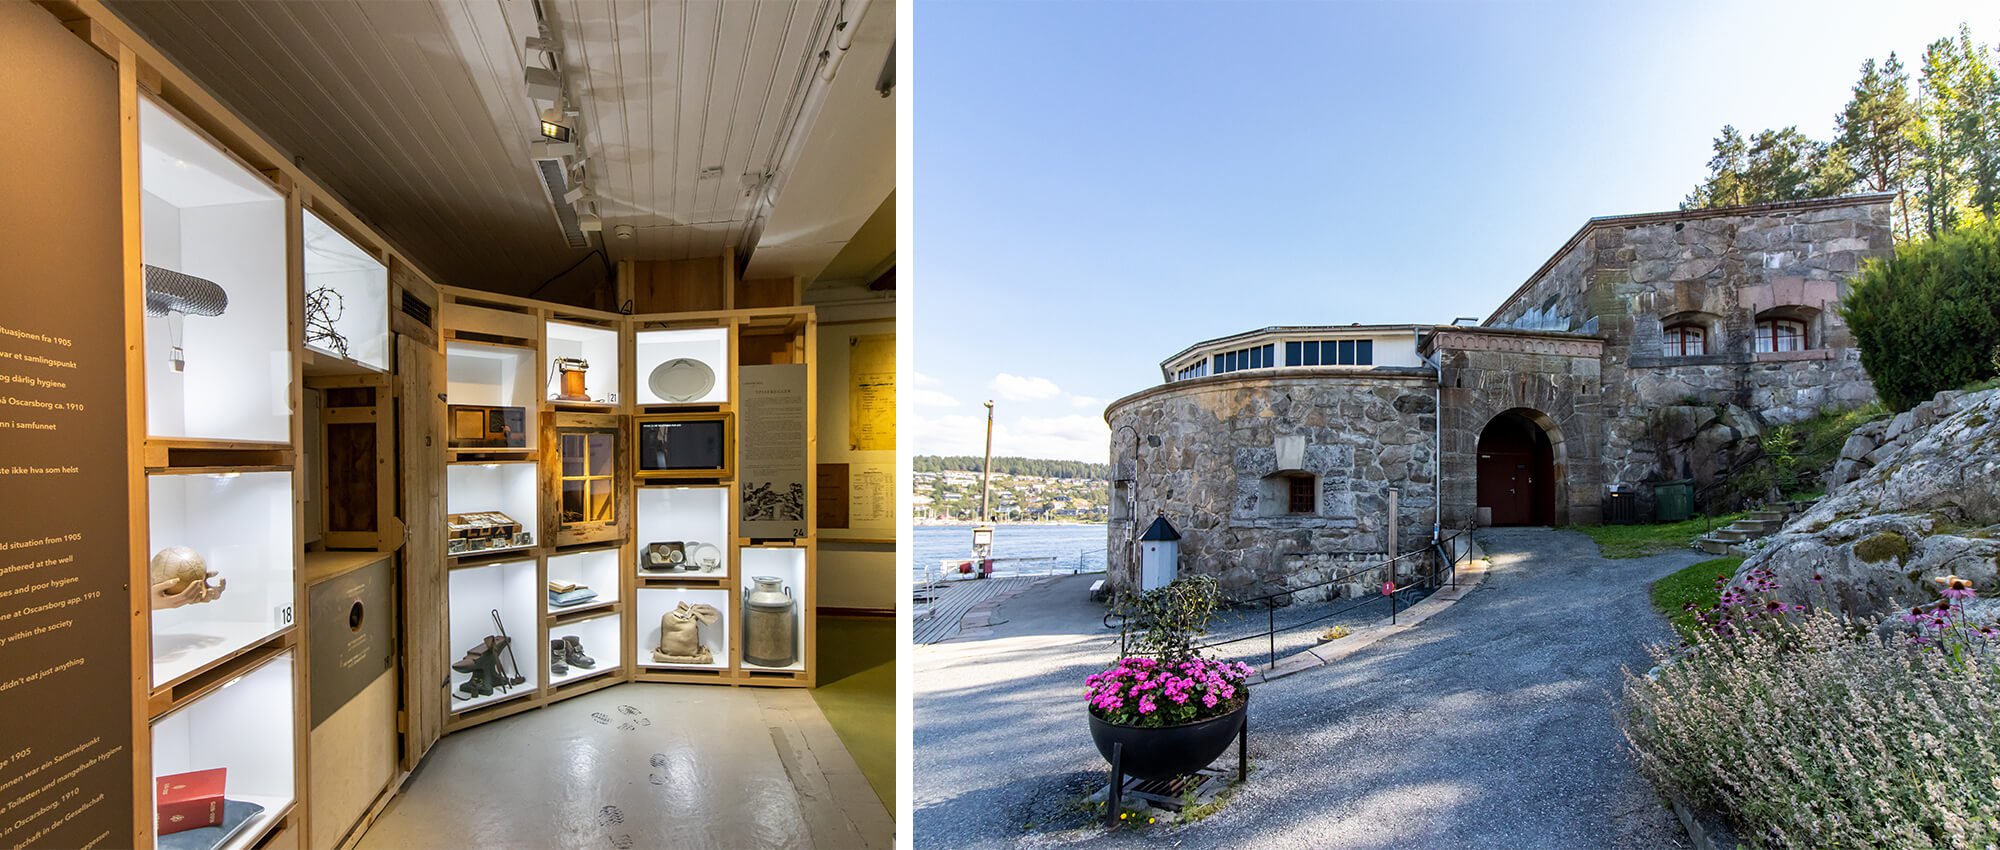 Workation in Norwegen, Insel Oscarsborg mit Museum und Ausstellung